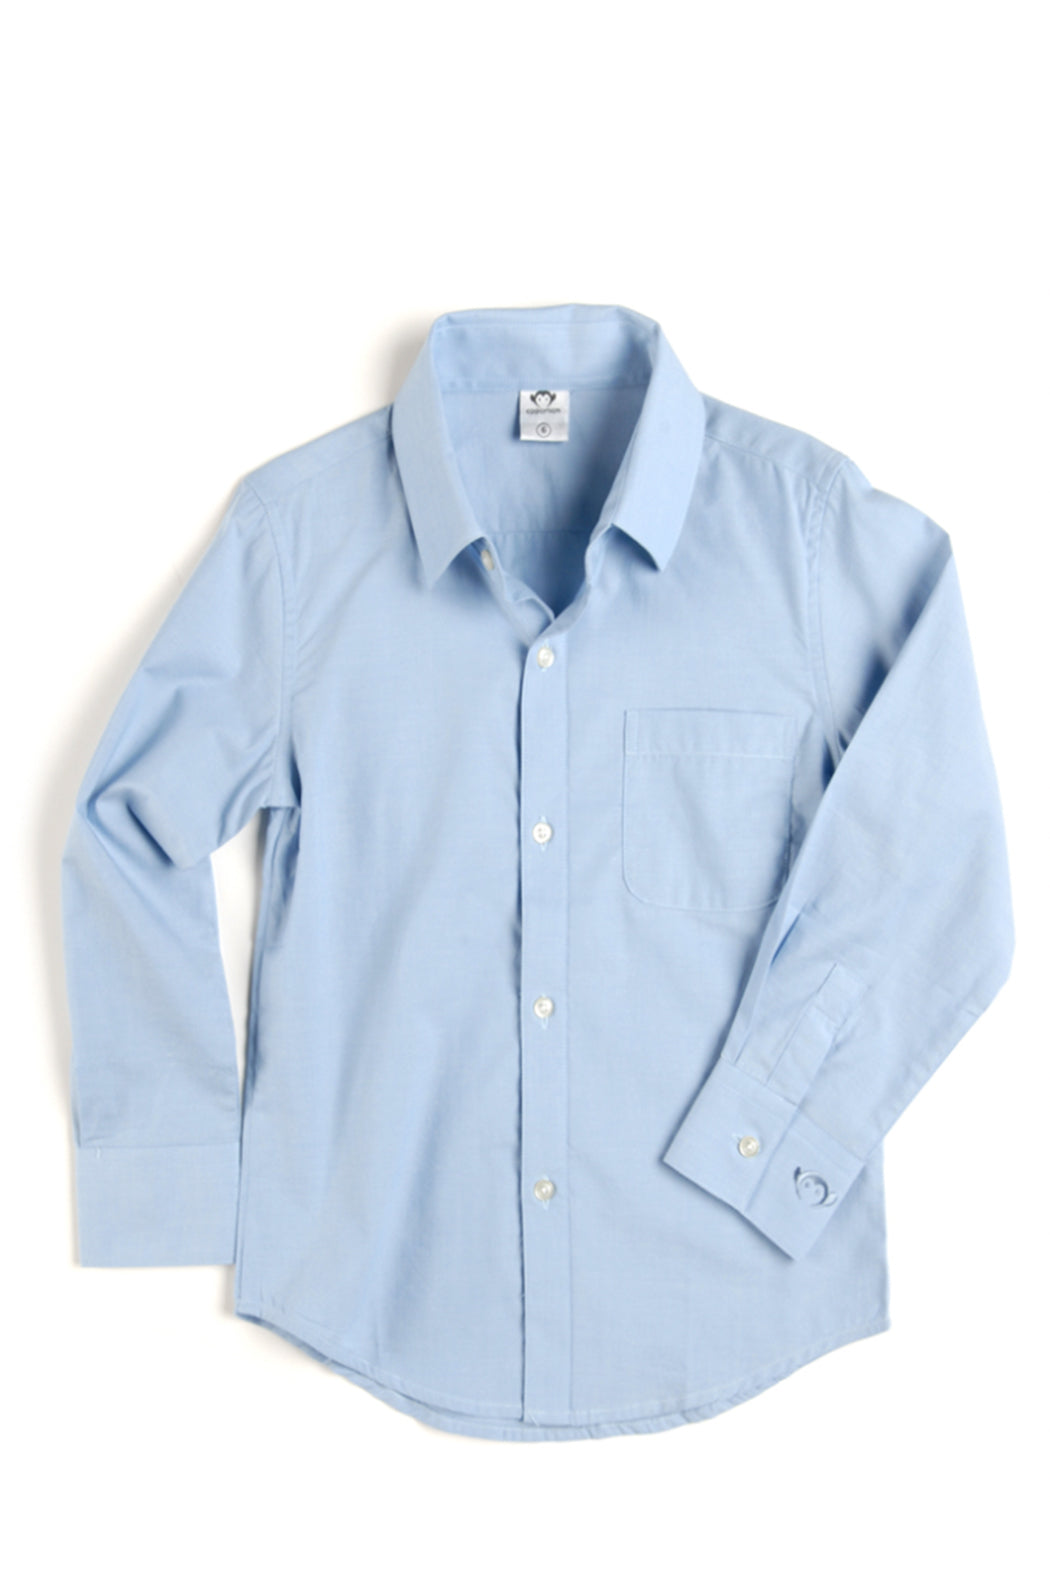 Appaman Standard Button Up Shirt